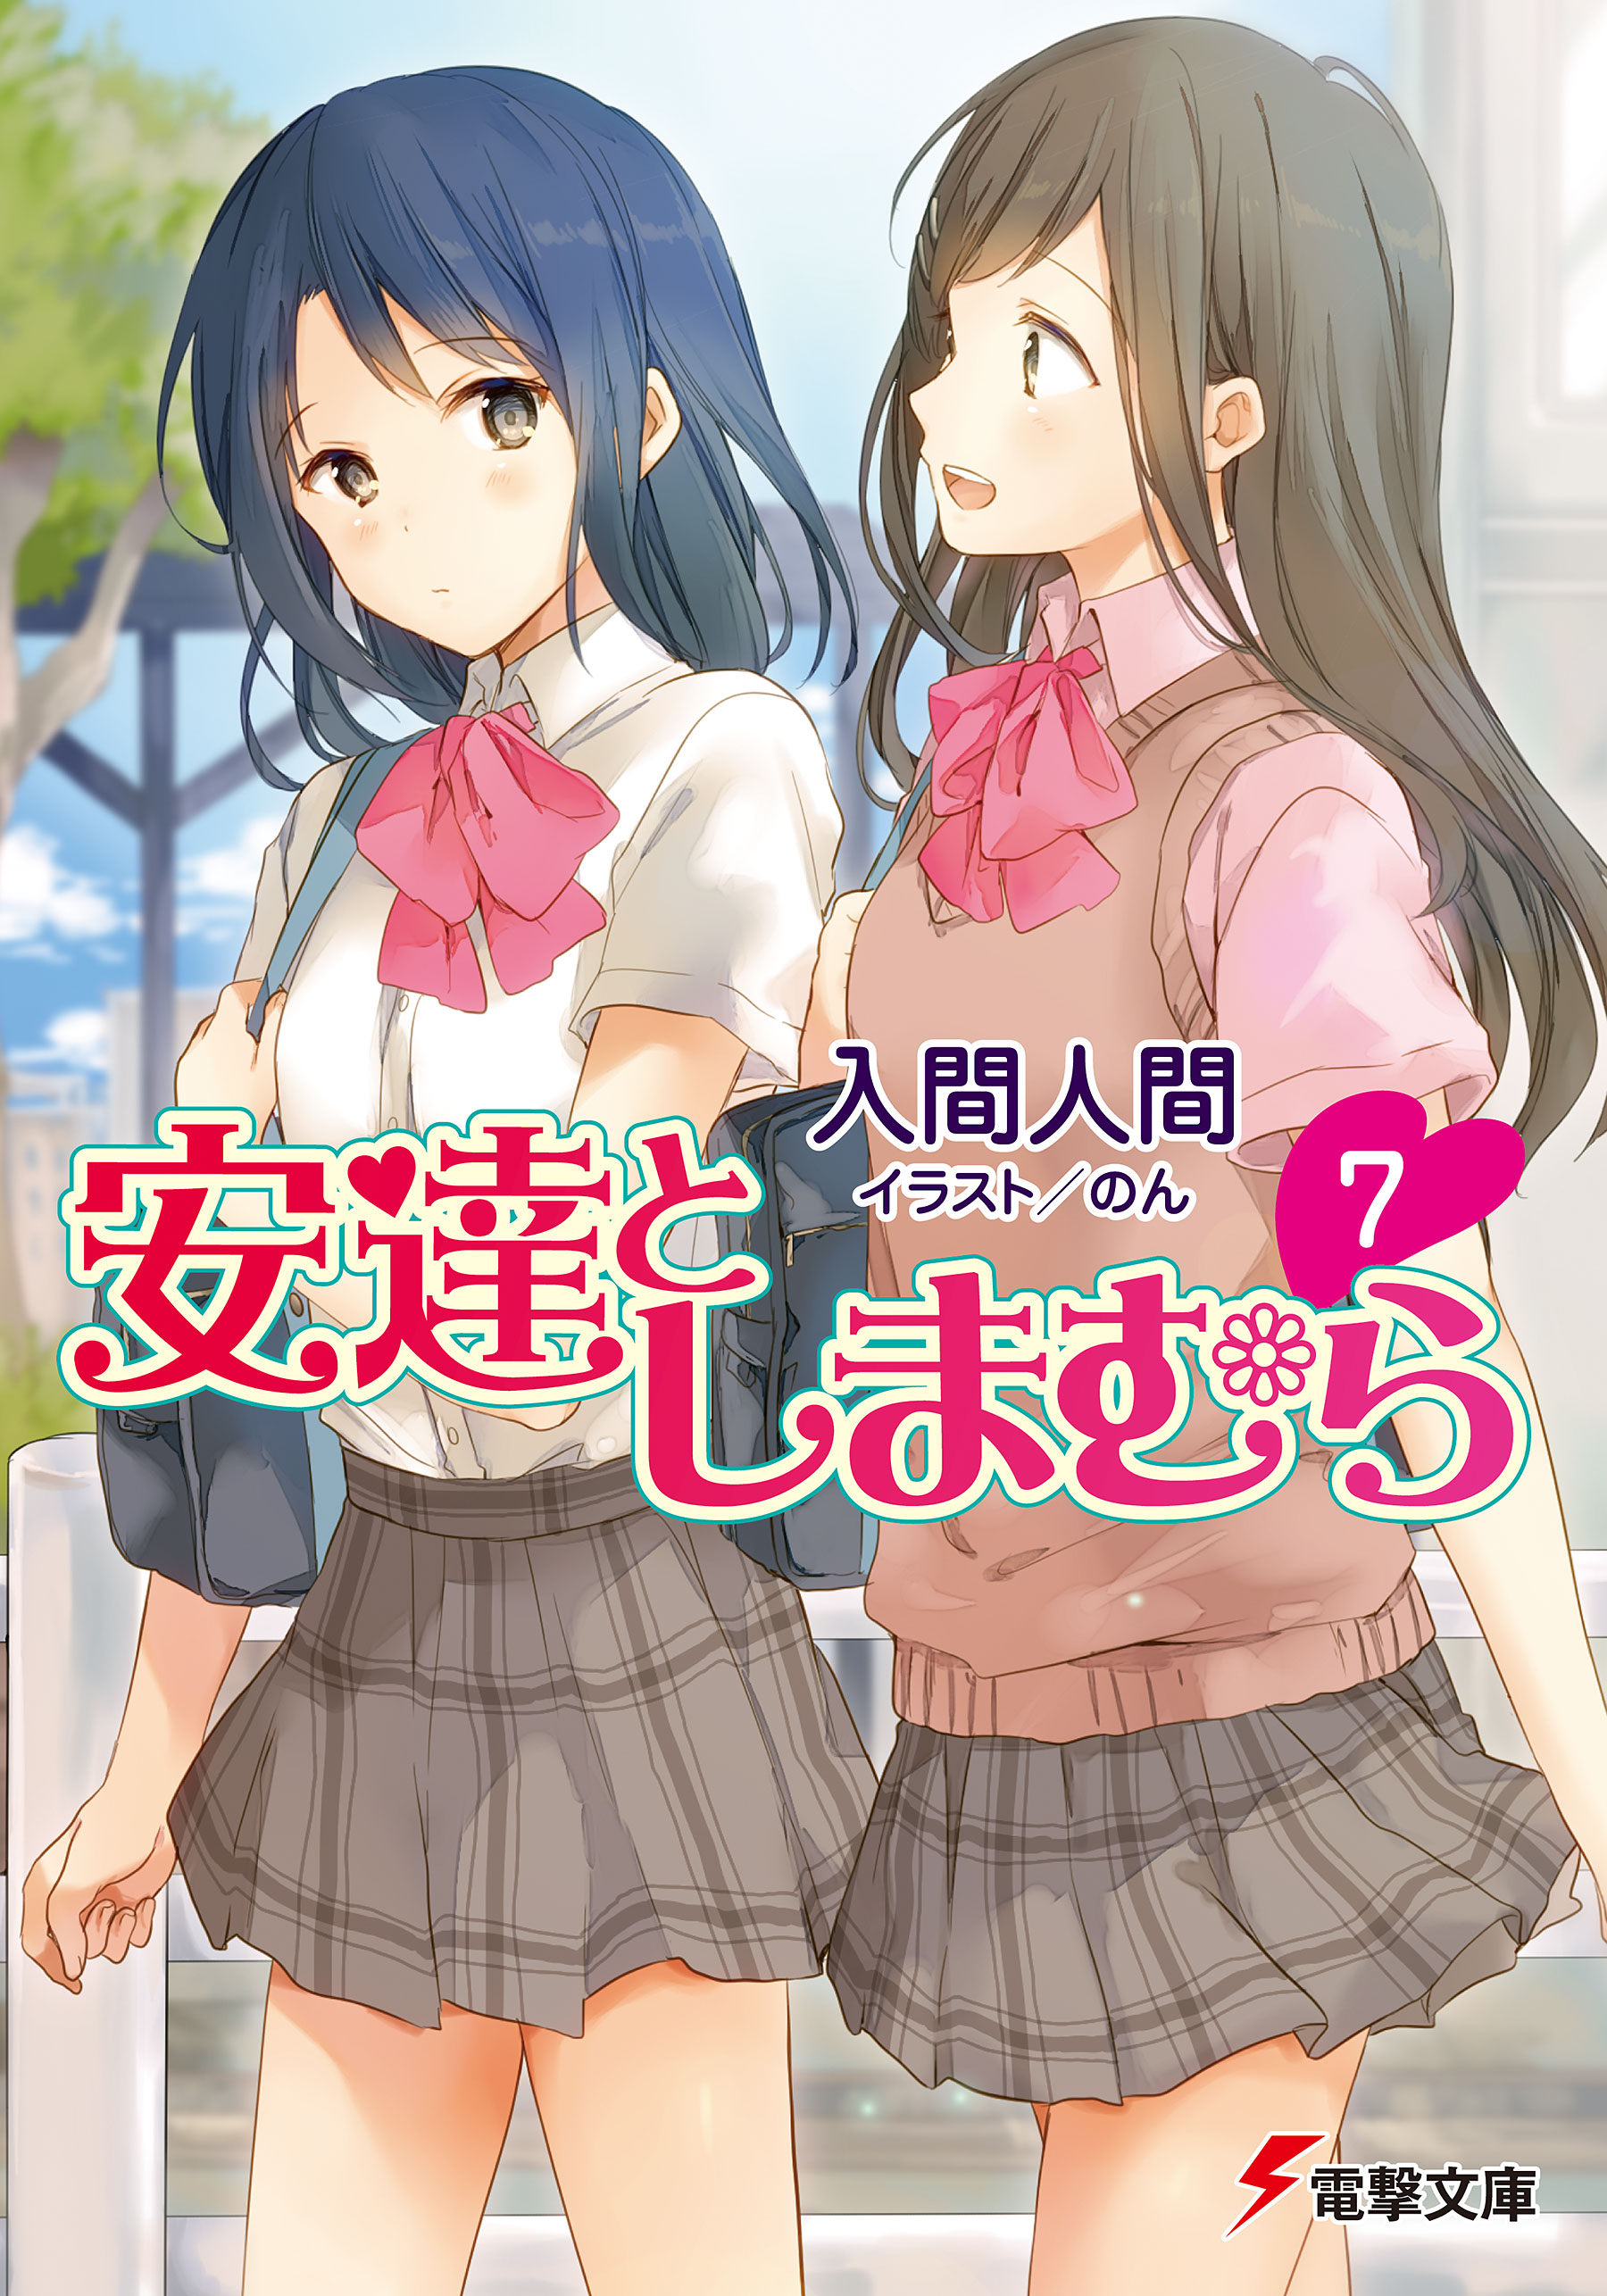 Chapter 3, Adachi to Shimamura Wiki